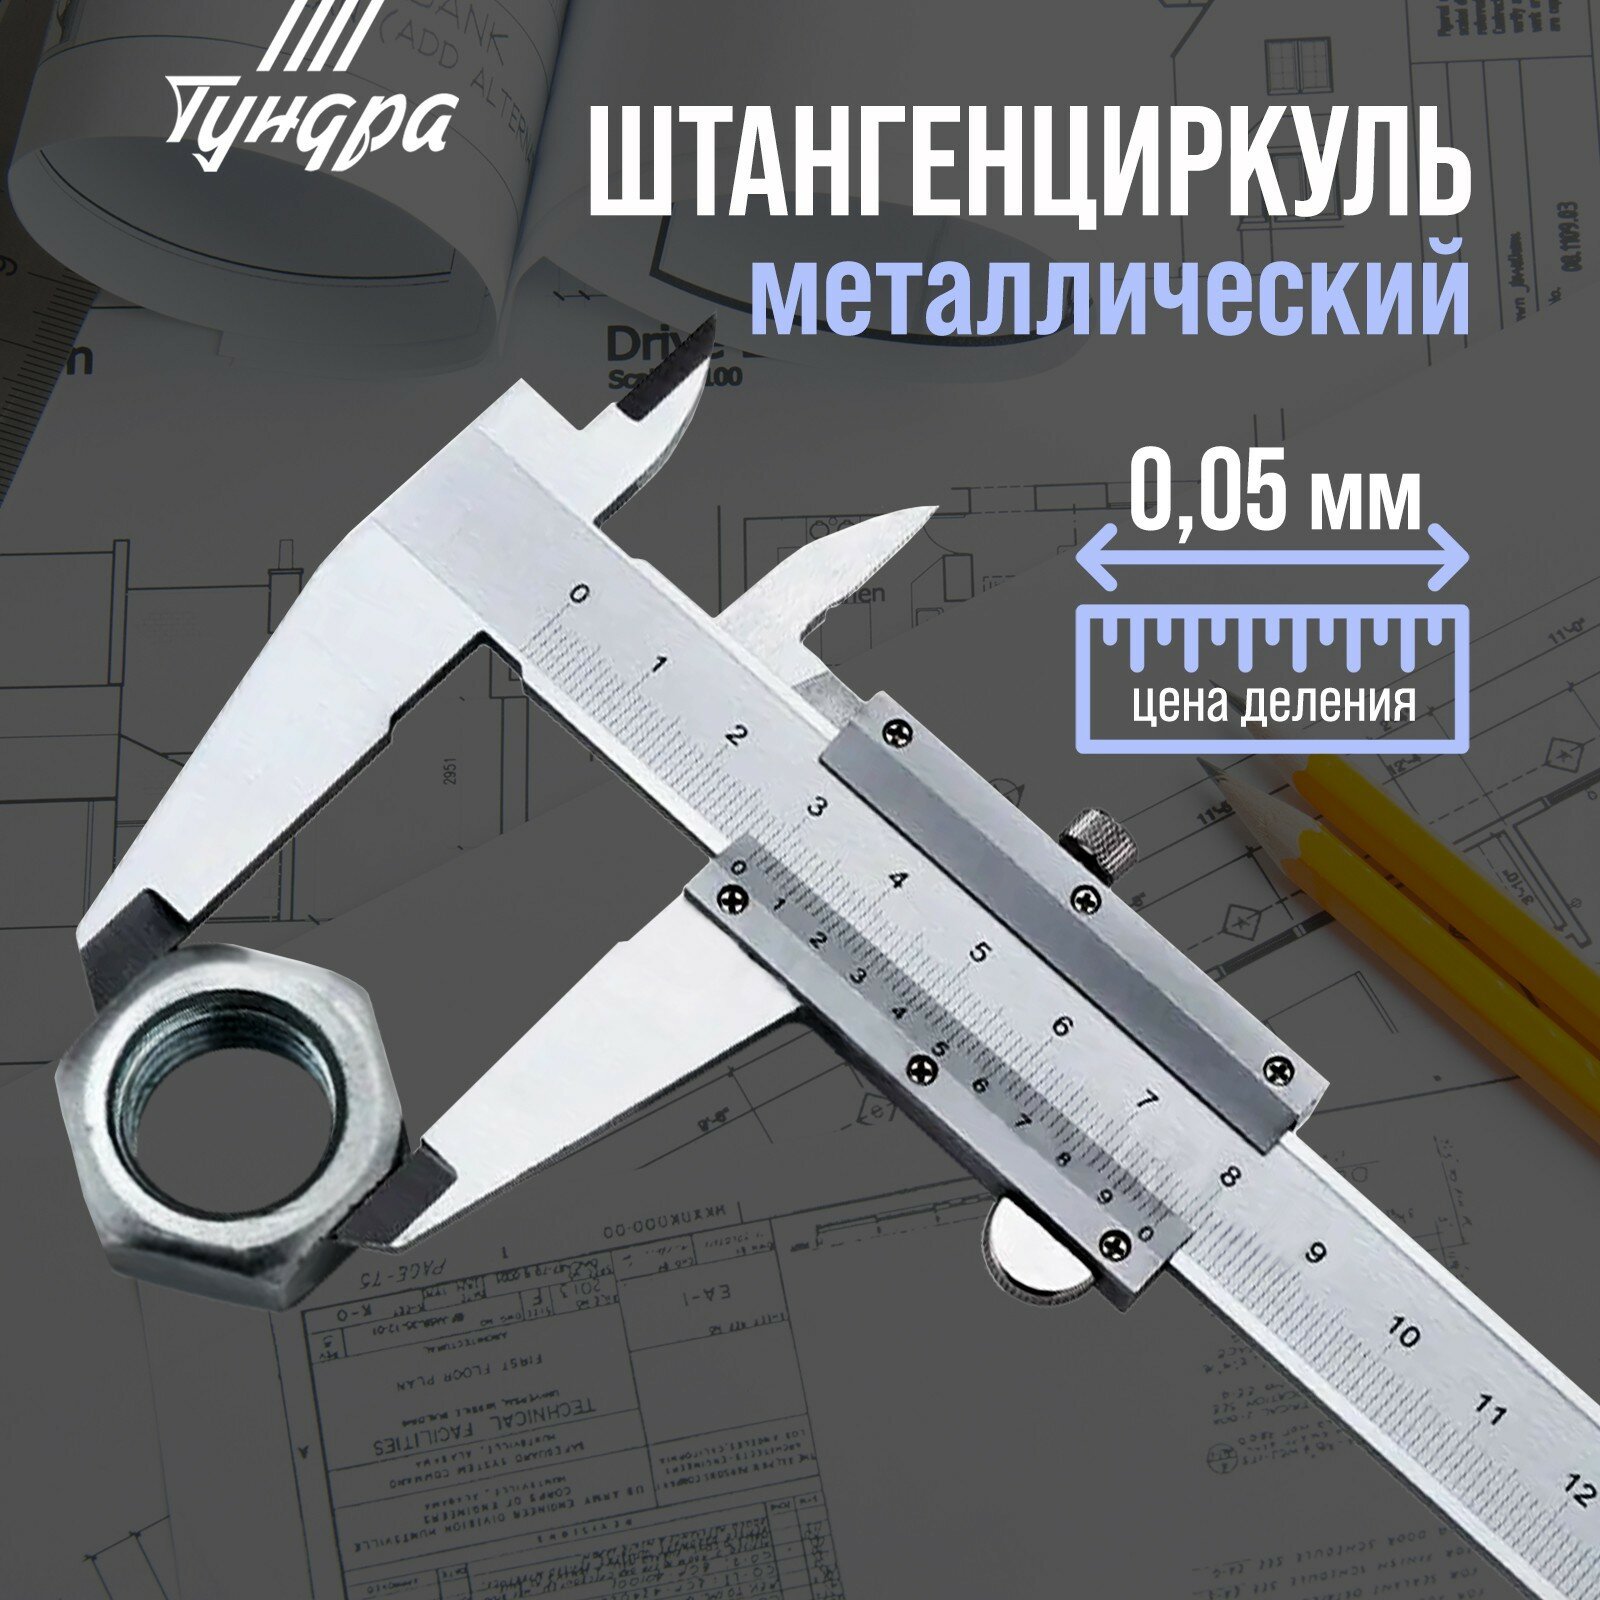 Штангенциркуль тундра металлический с глубиномером цена деления 0.05 мм 100 мм